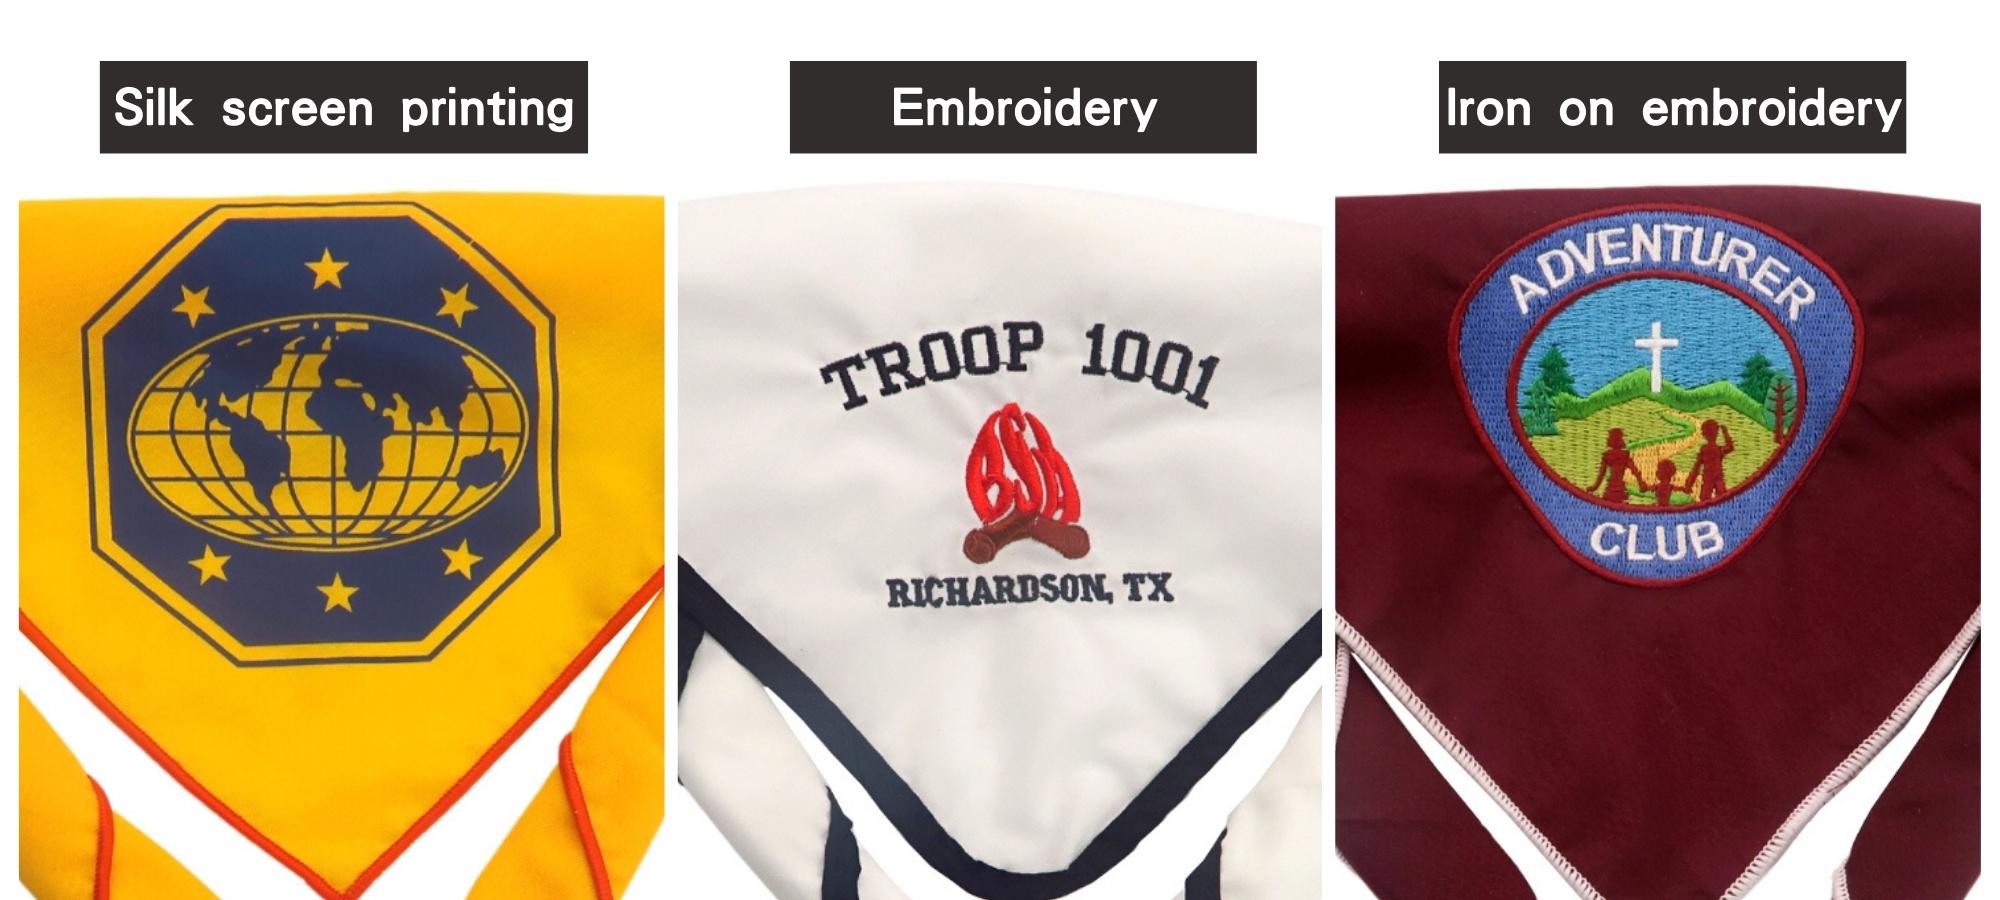 Le logo du foulard scout peut être personnalisé.